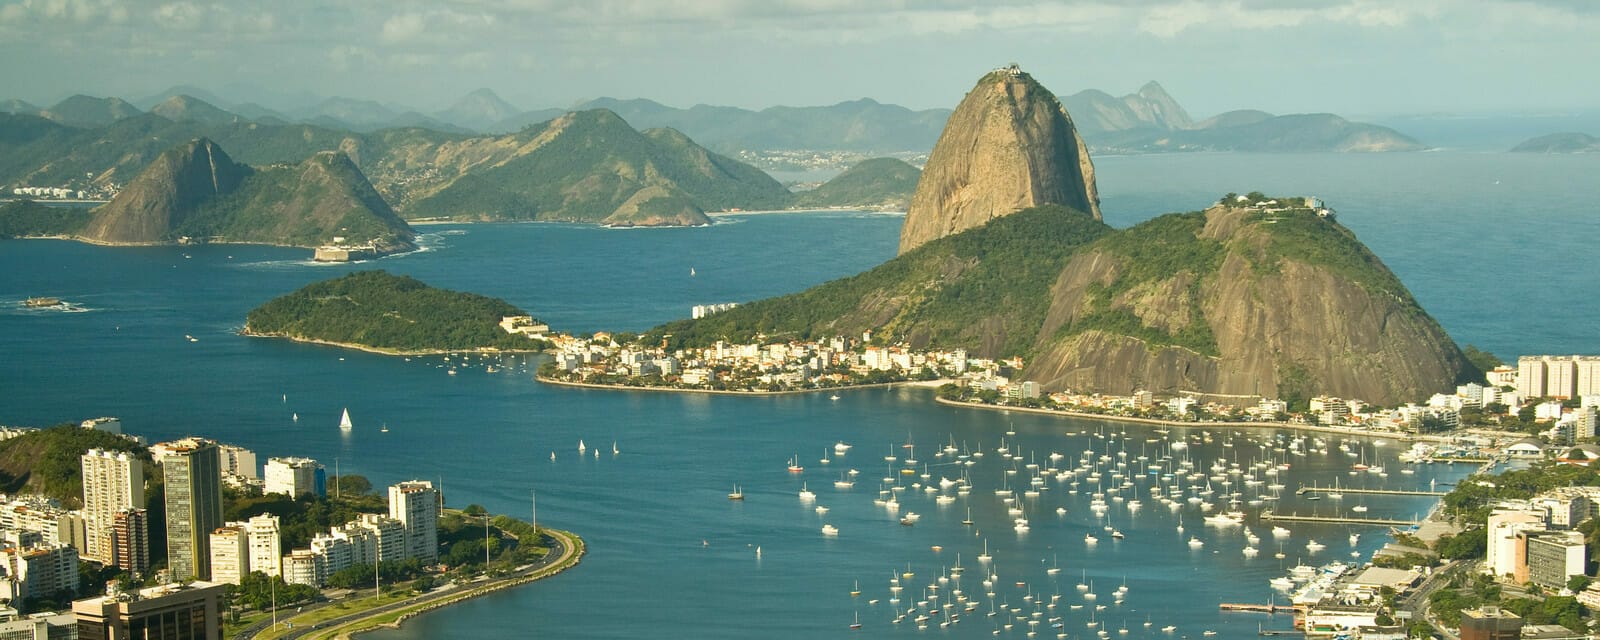 Lire la suite à propos de l’article Rio de Janeiro, Brésil: Voyages et circuits